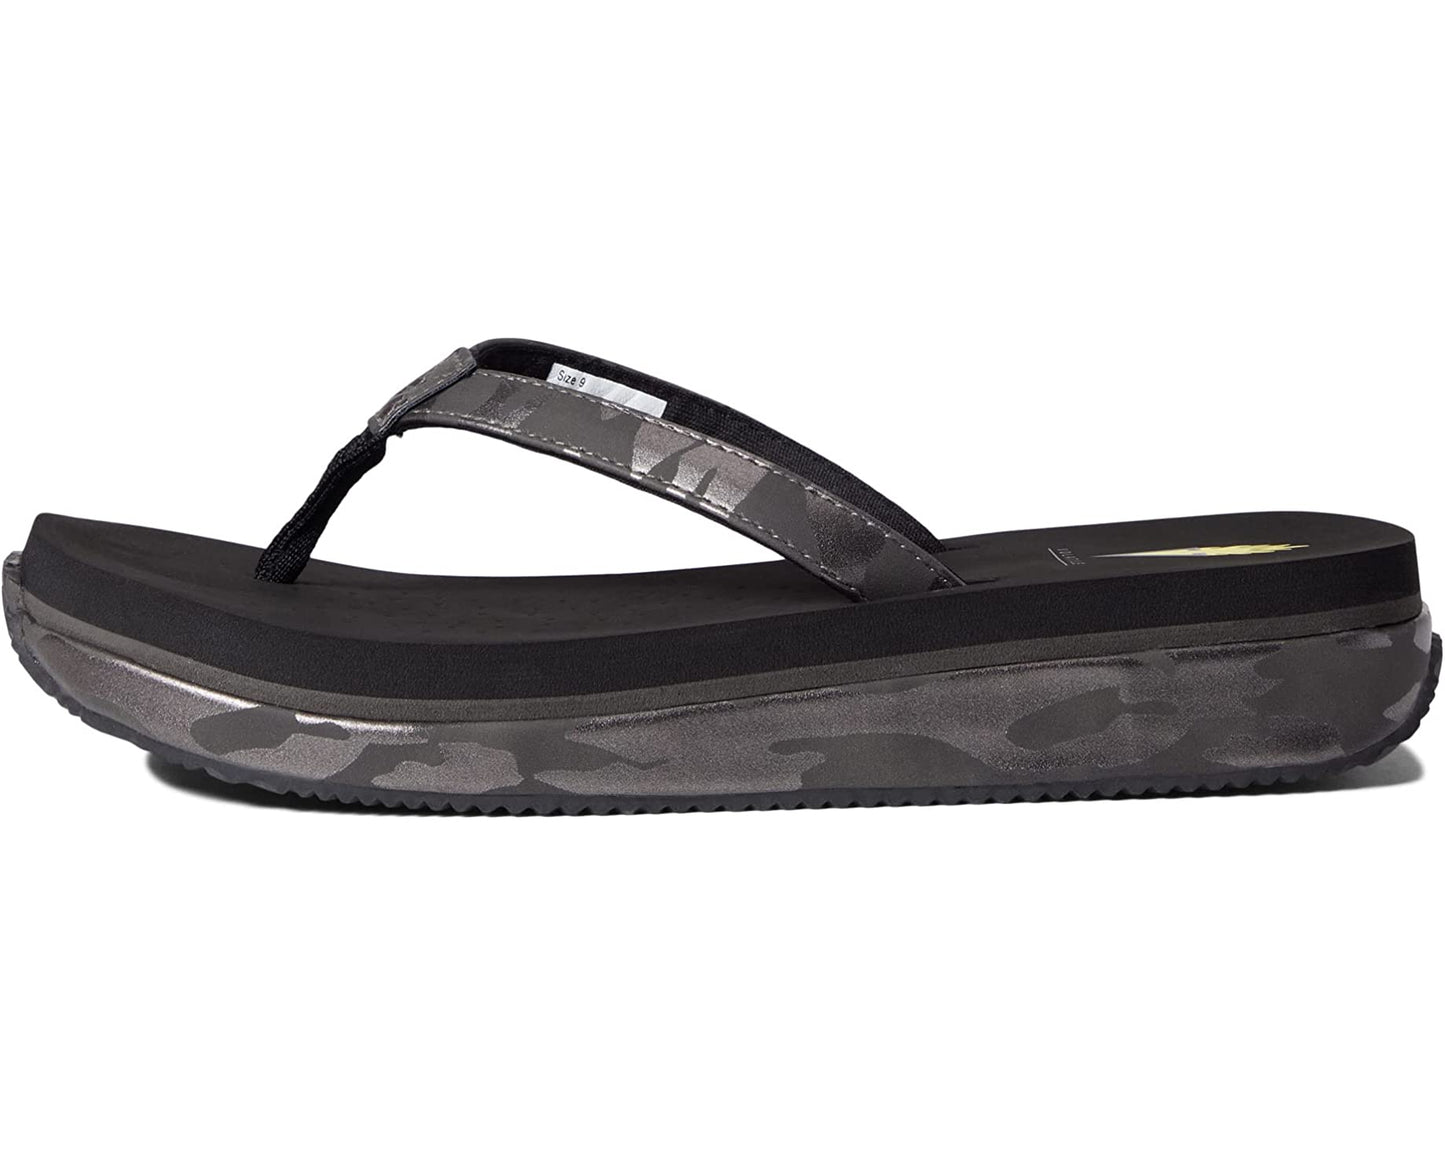 Volatile Untamed Sandal in Black Camo